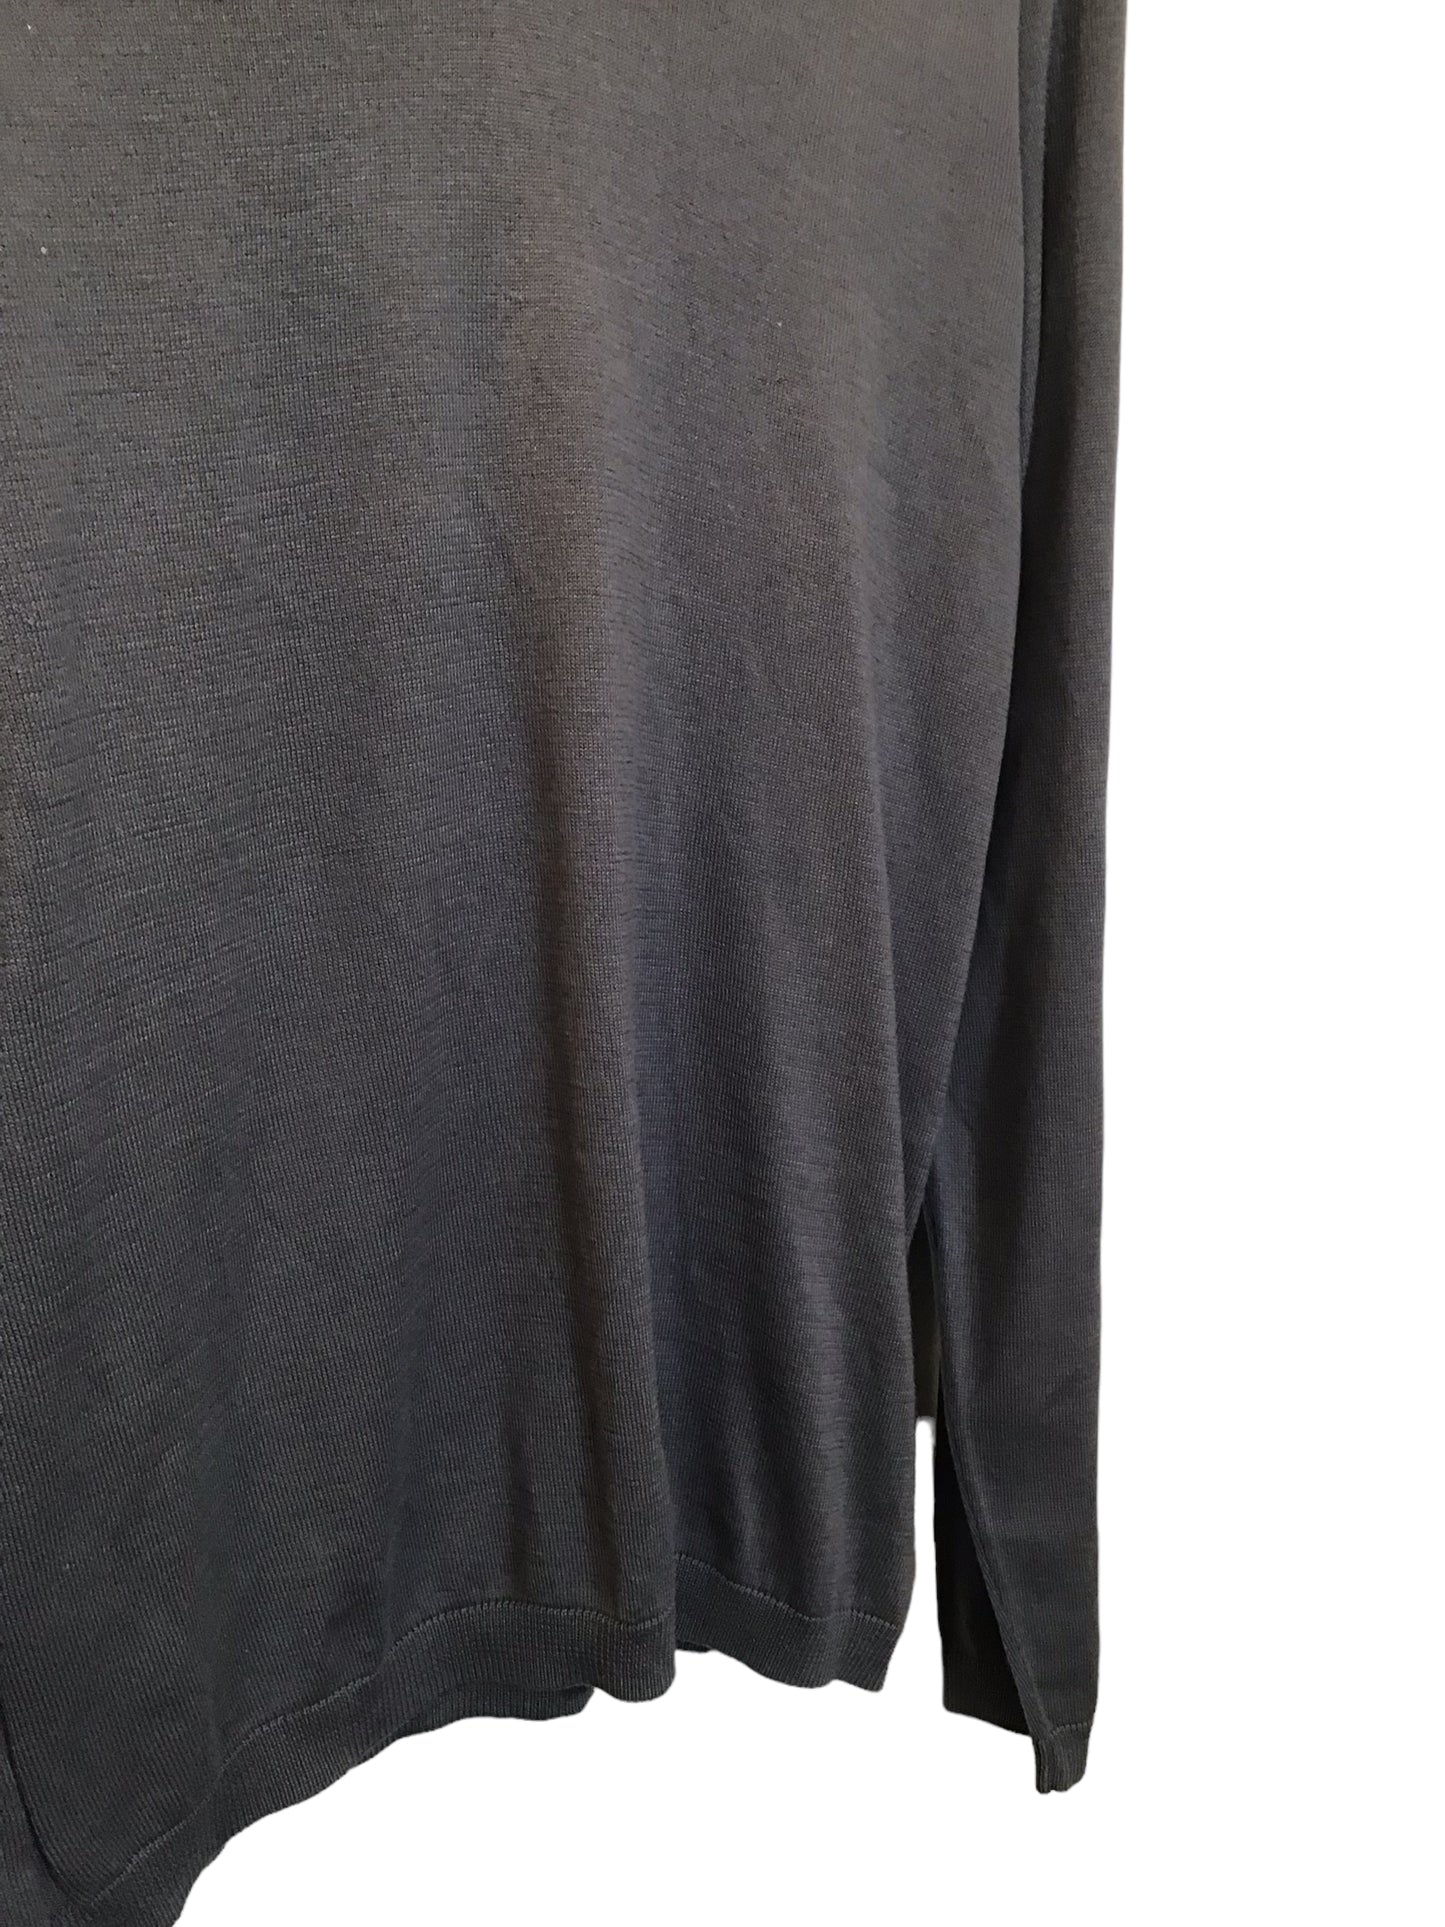 Gap V-Neck Sweatshirt (Size M)